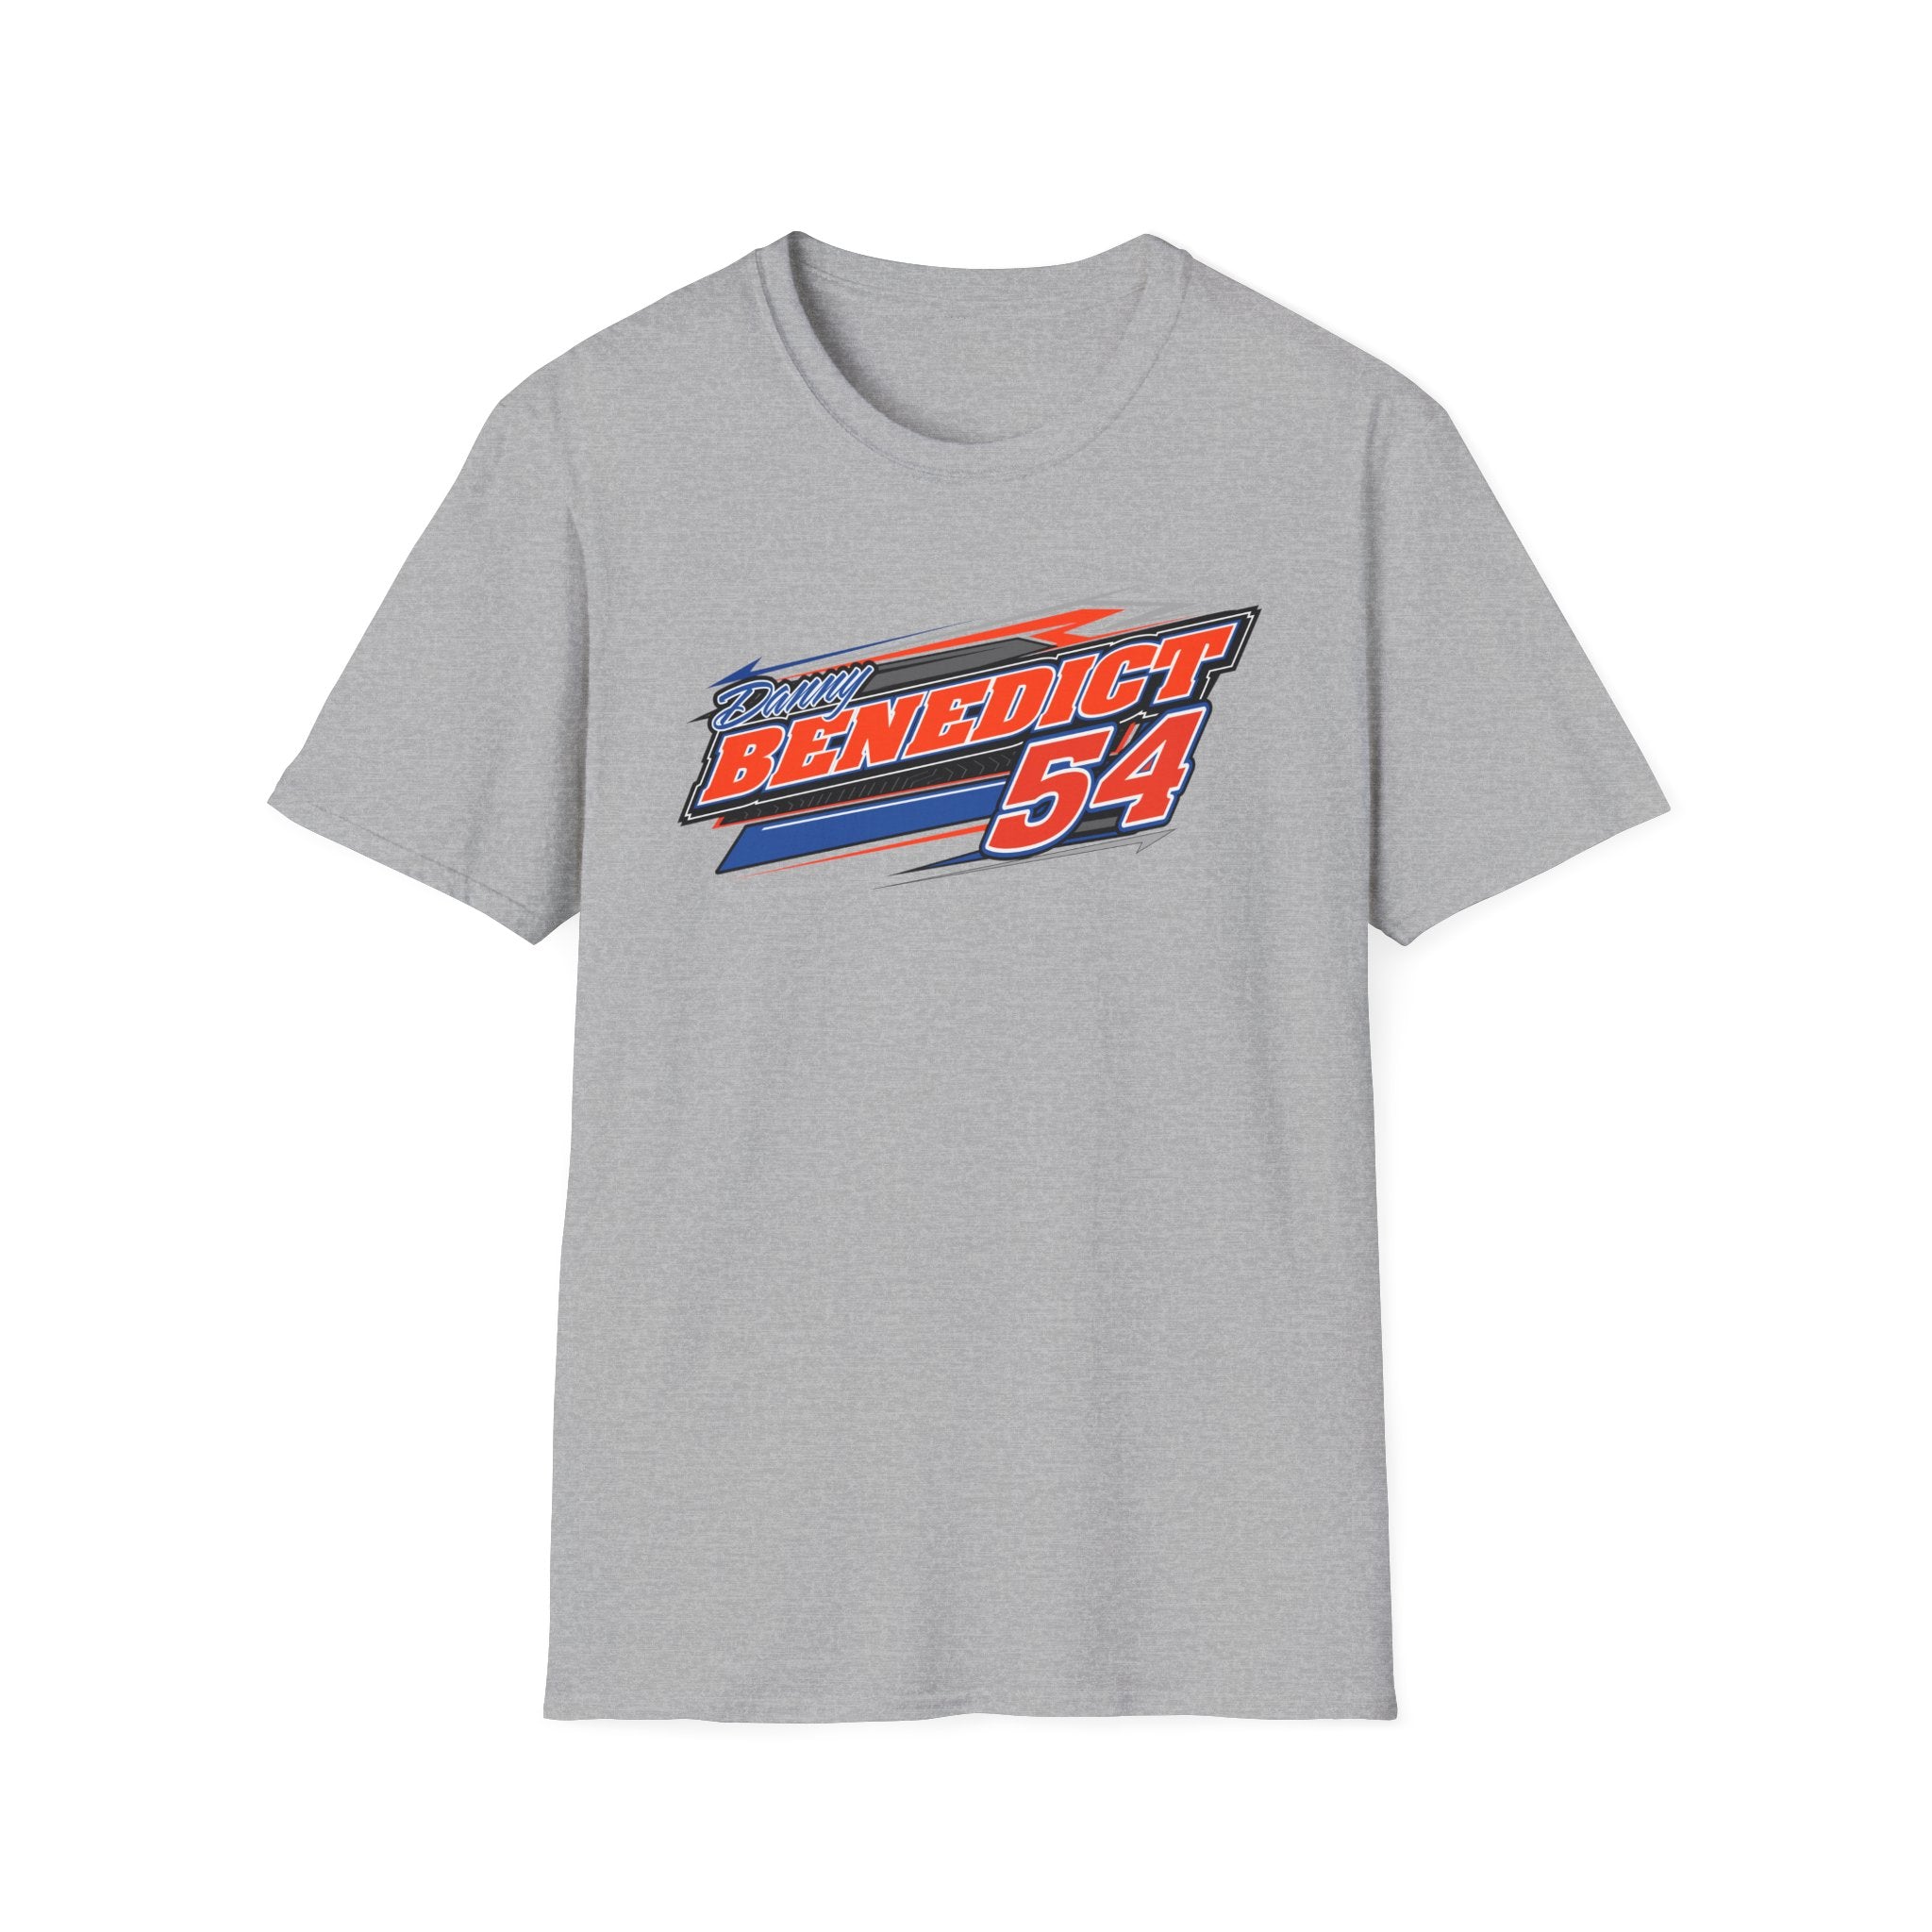 Test_Danny Benedict Racing Men's Tshirt T-Shirt